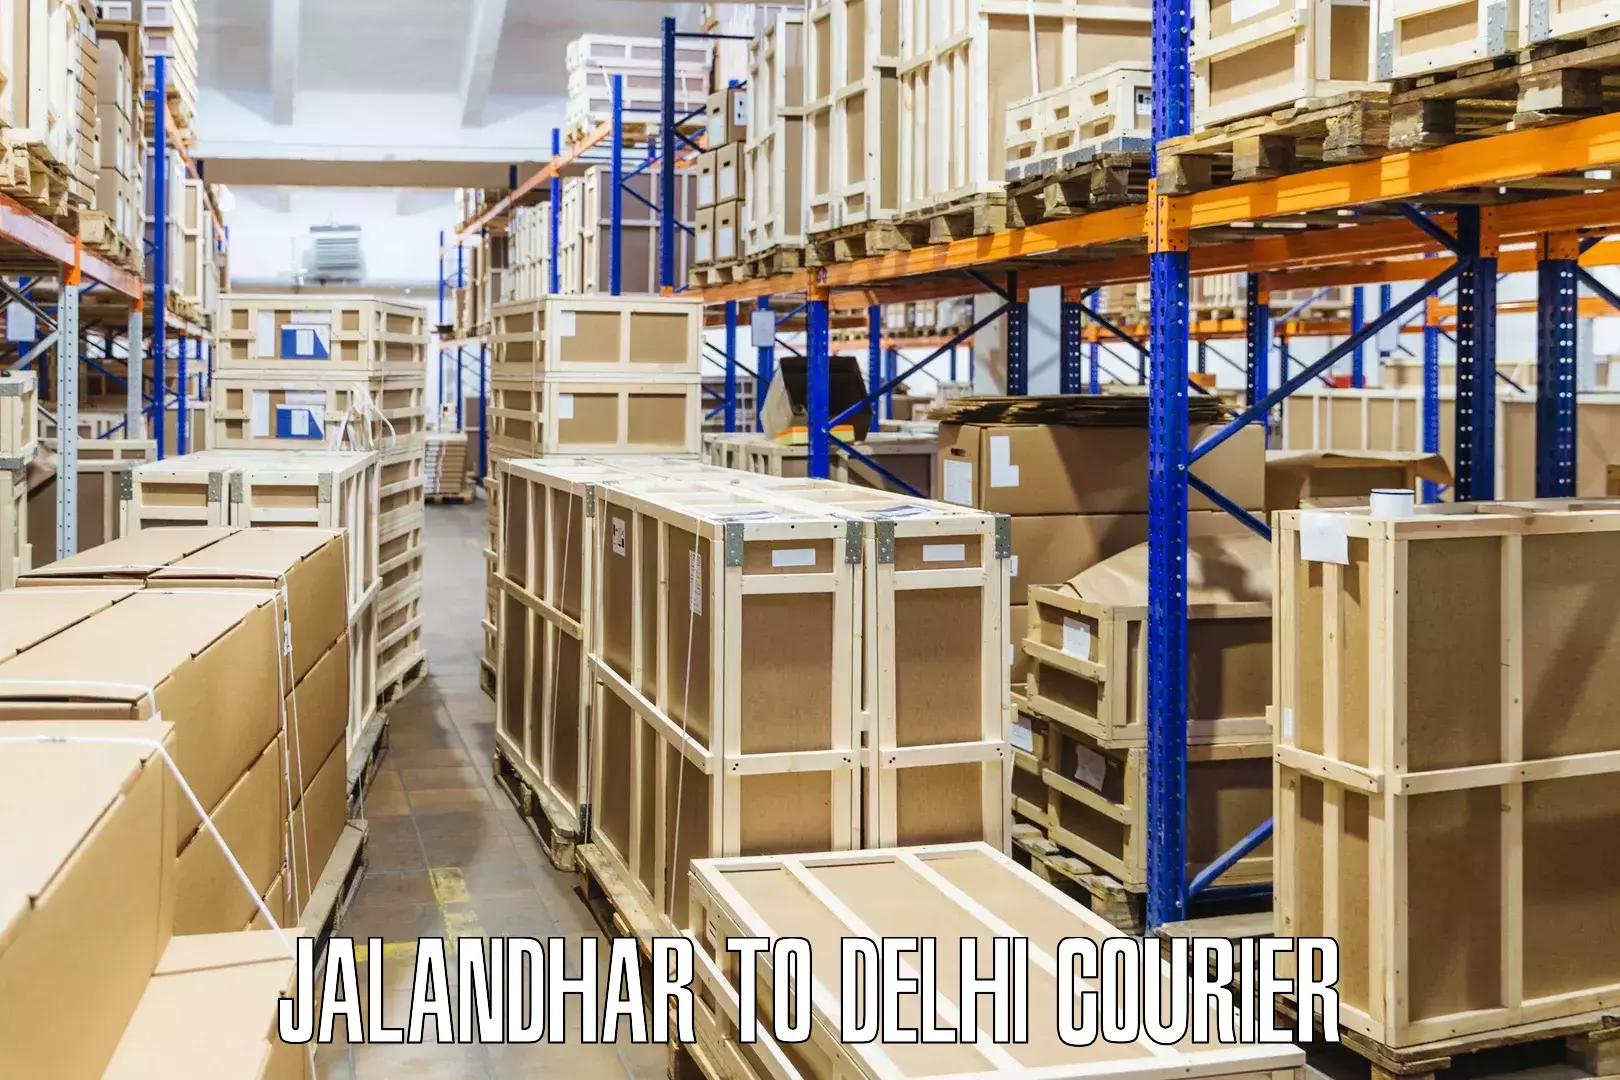 Advanced courier platforms Jalandhar to Lodhi Road